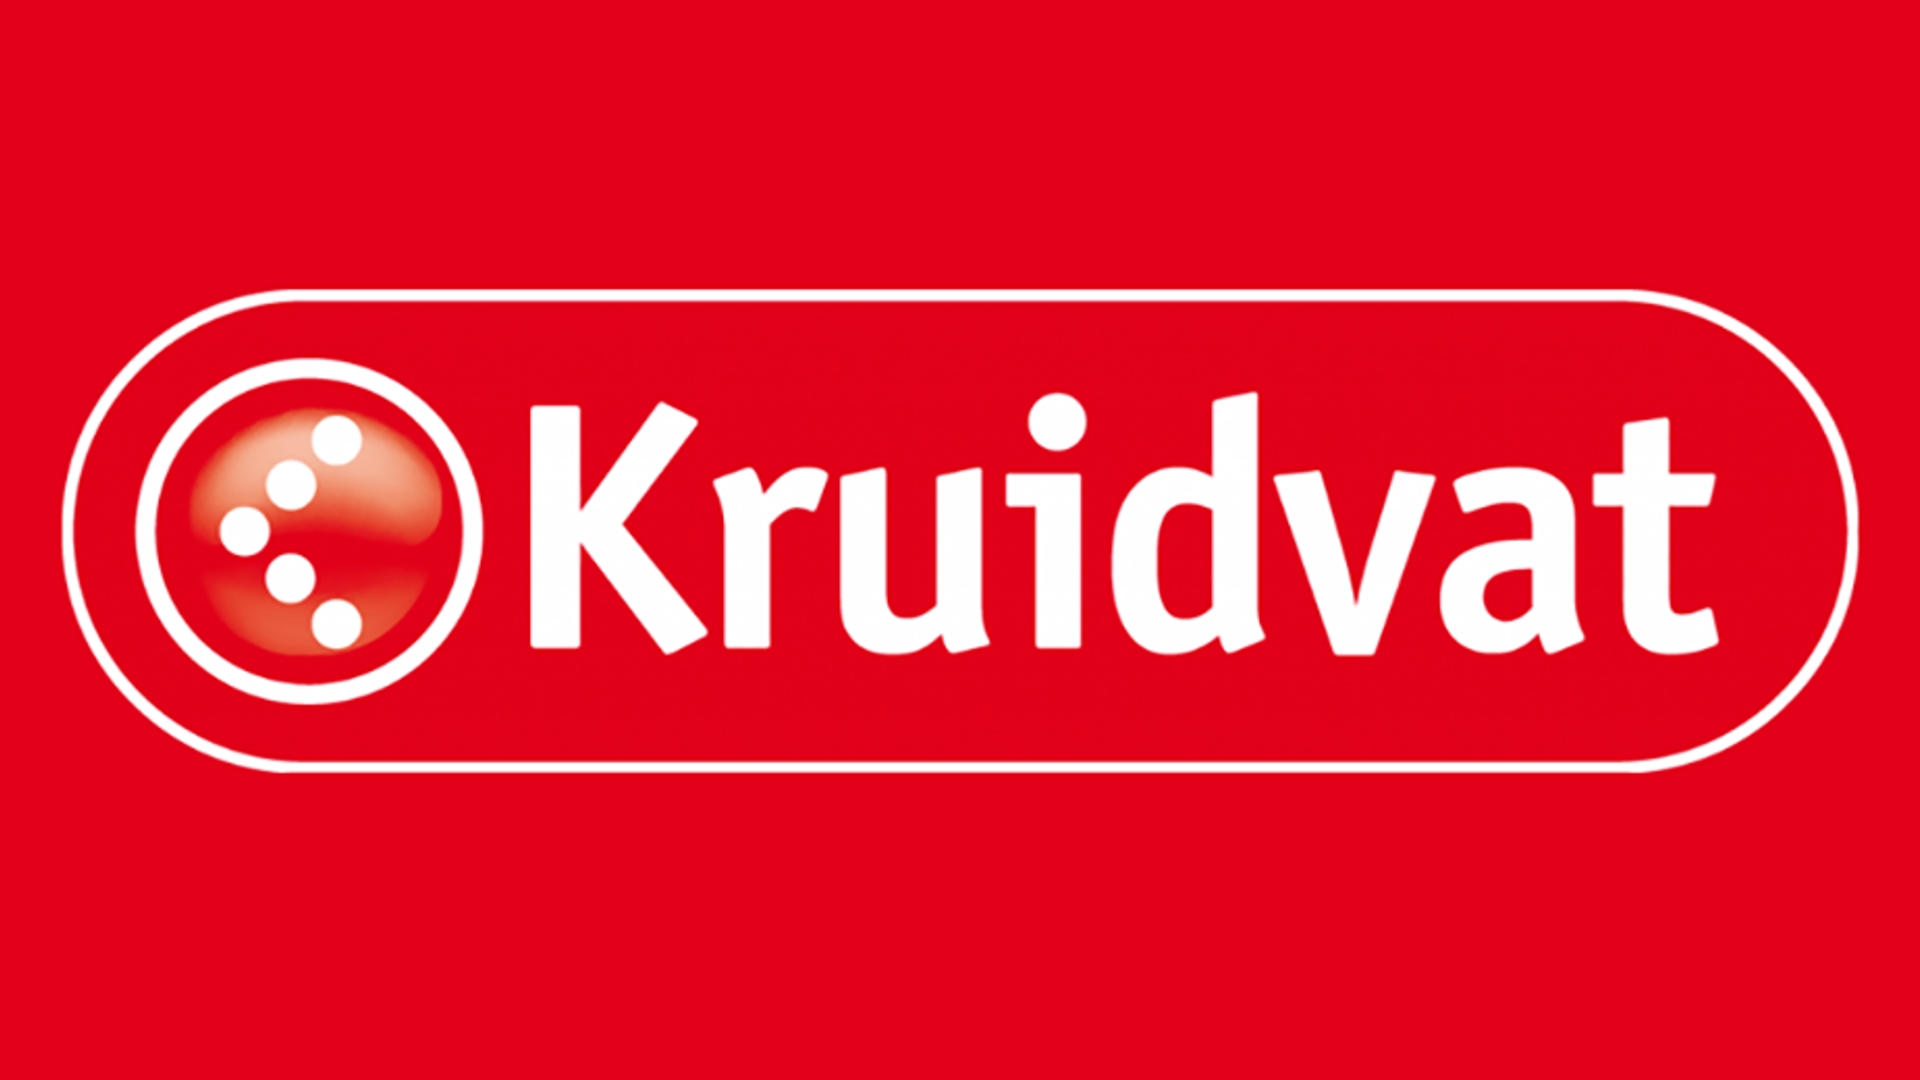 kruidvat logo 930x520